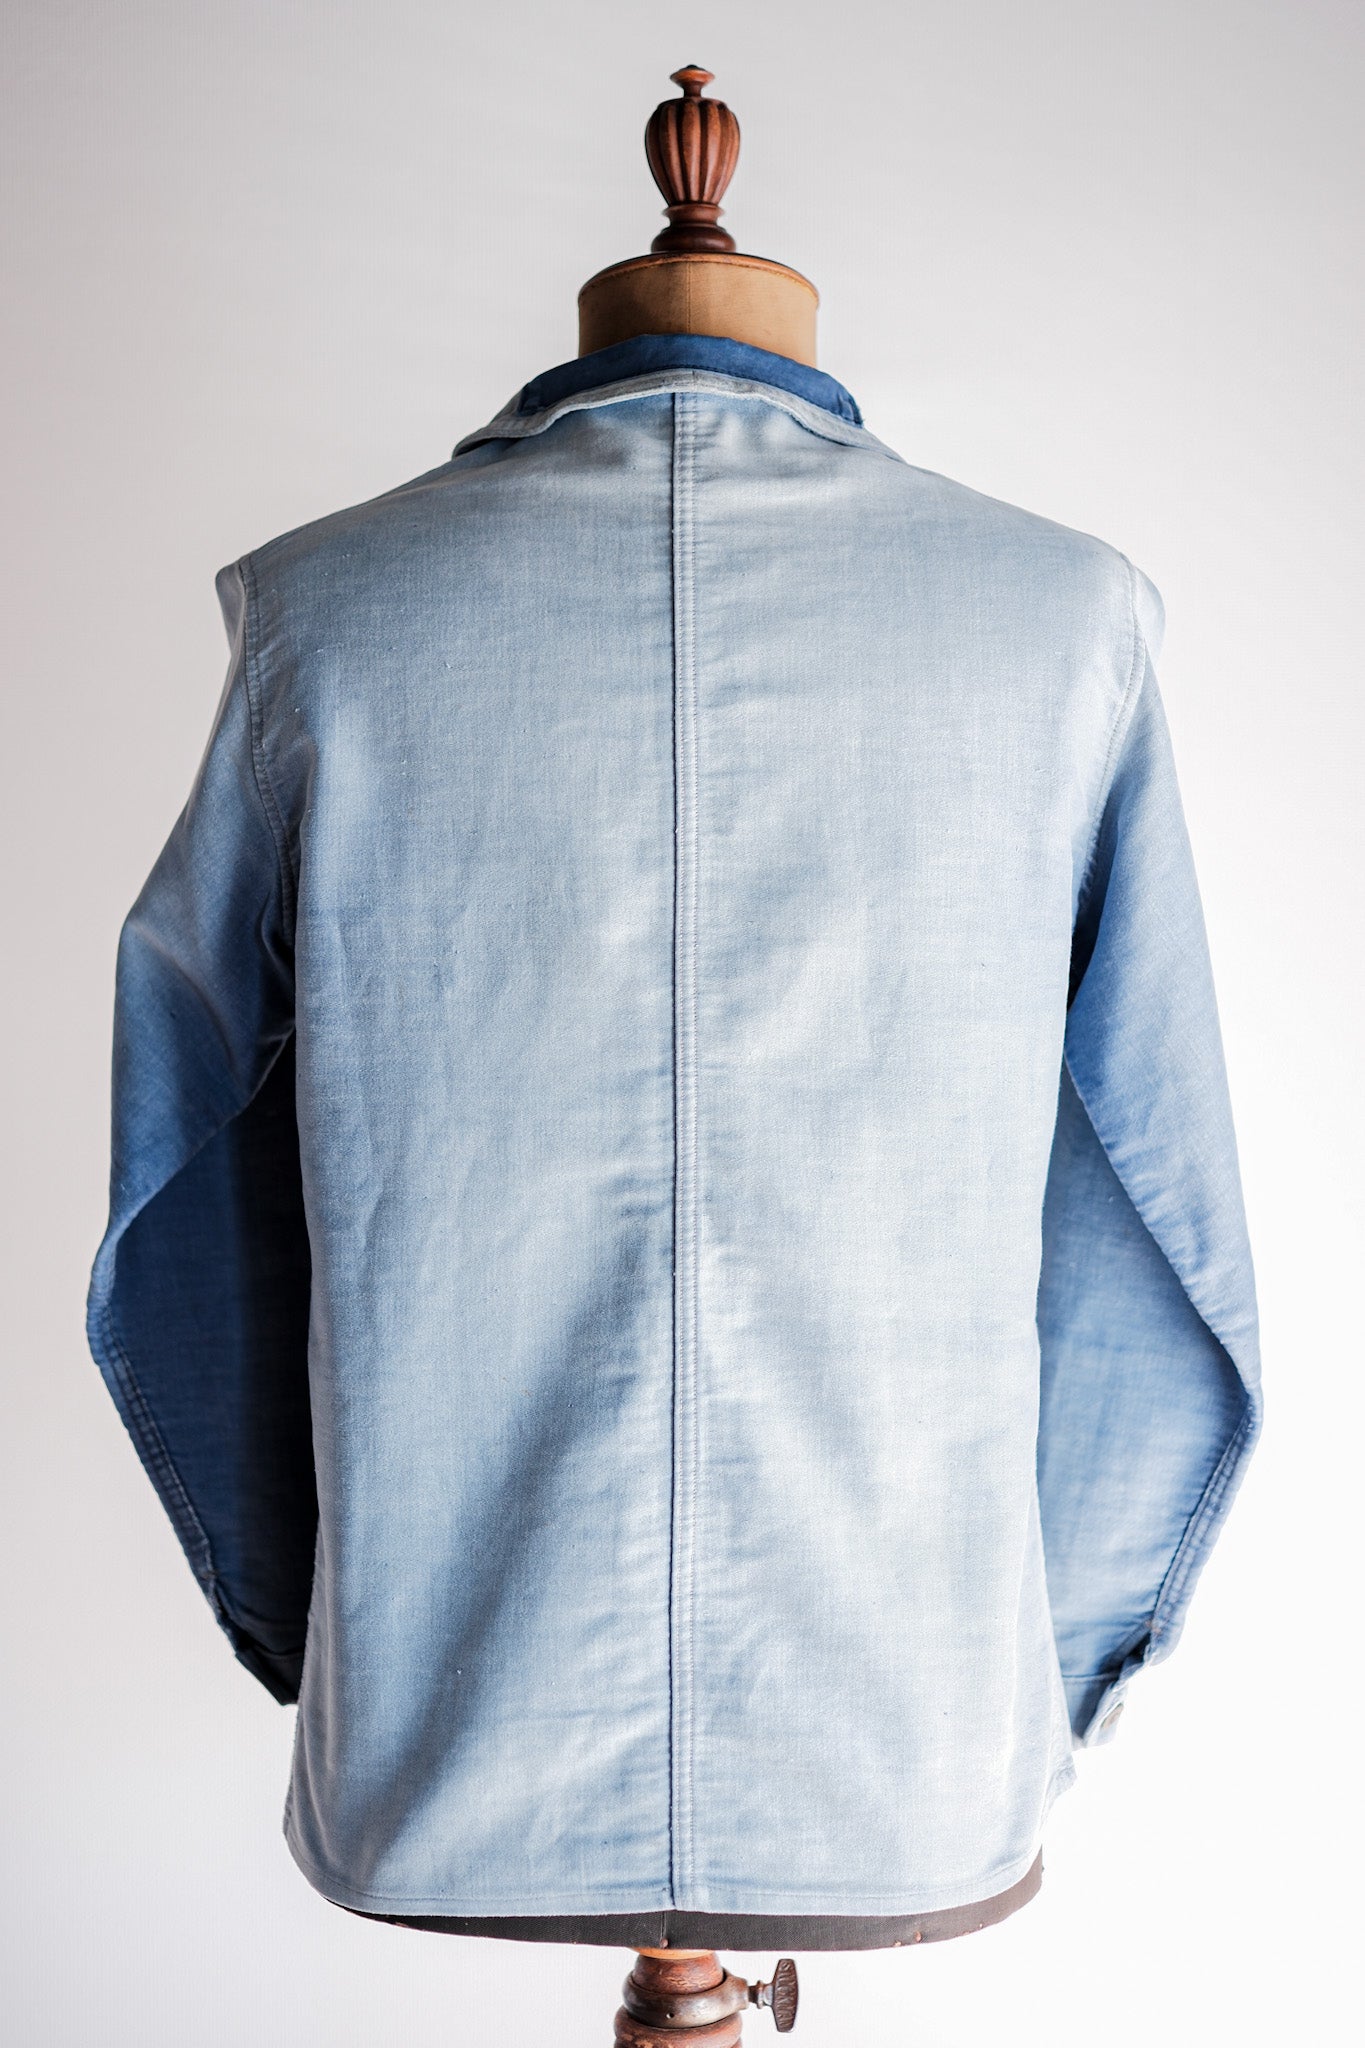 [~ 40 '] 프랑스 빈티지 블루 몰스 피부 작업 재킷 "4 버튼"